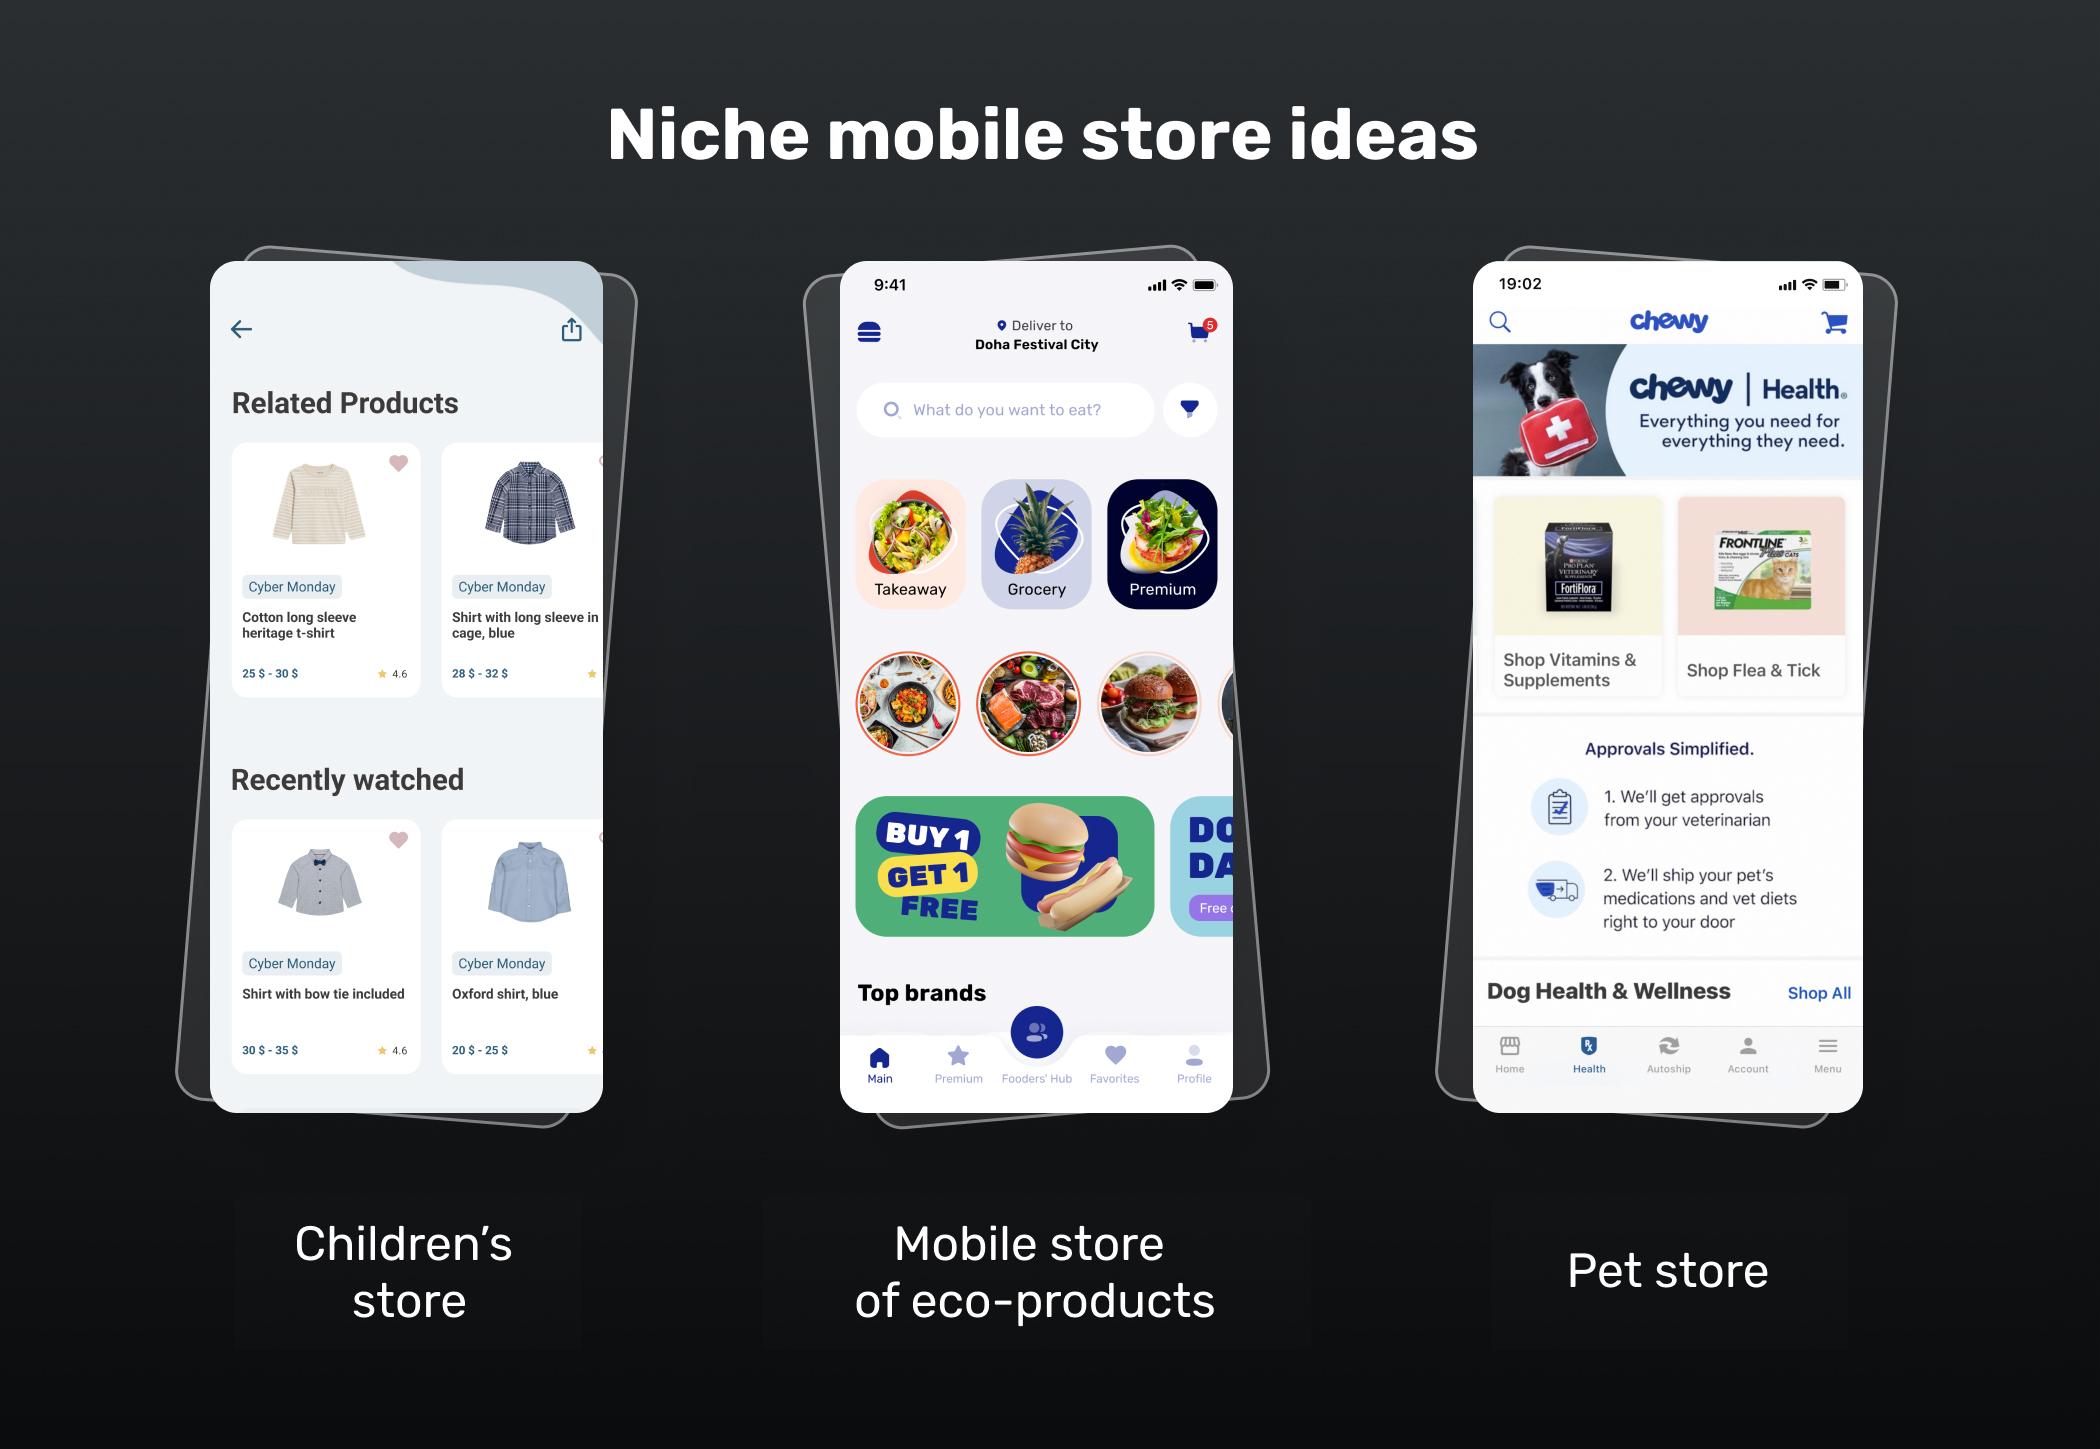 Niche mobile store ideas